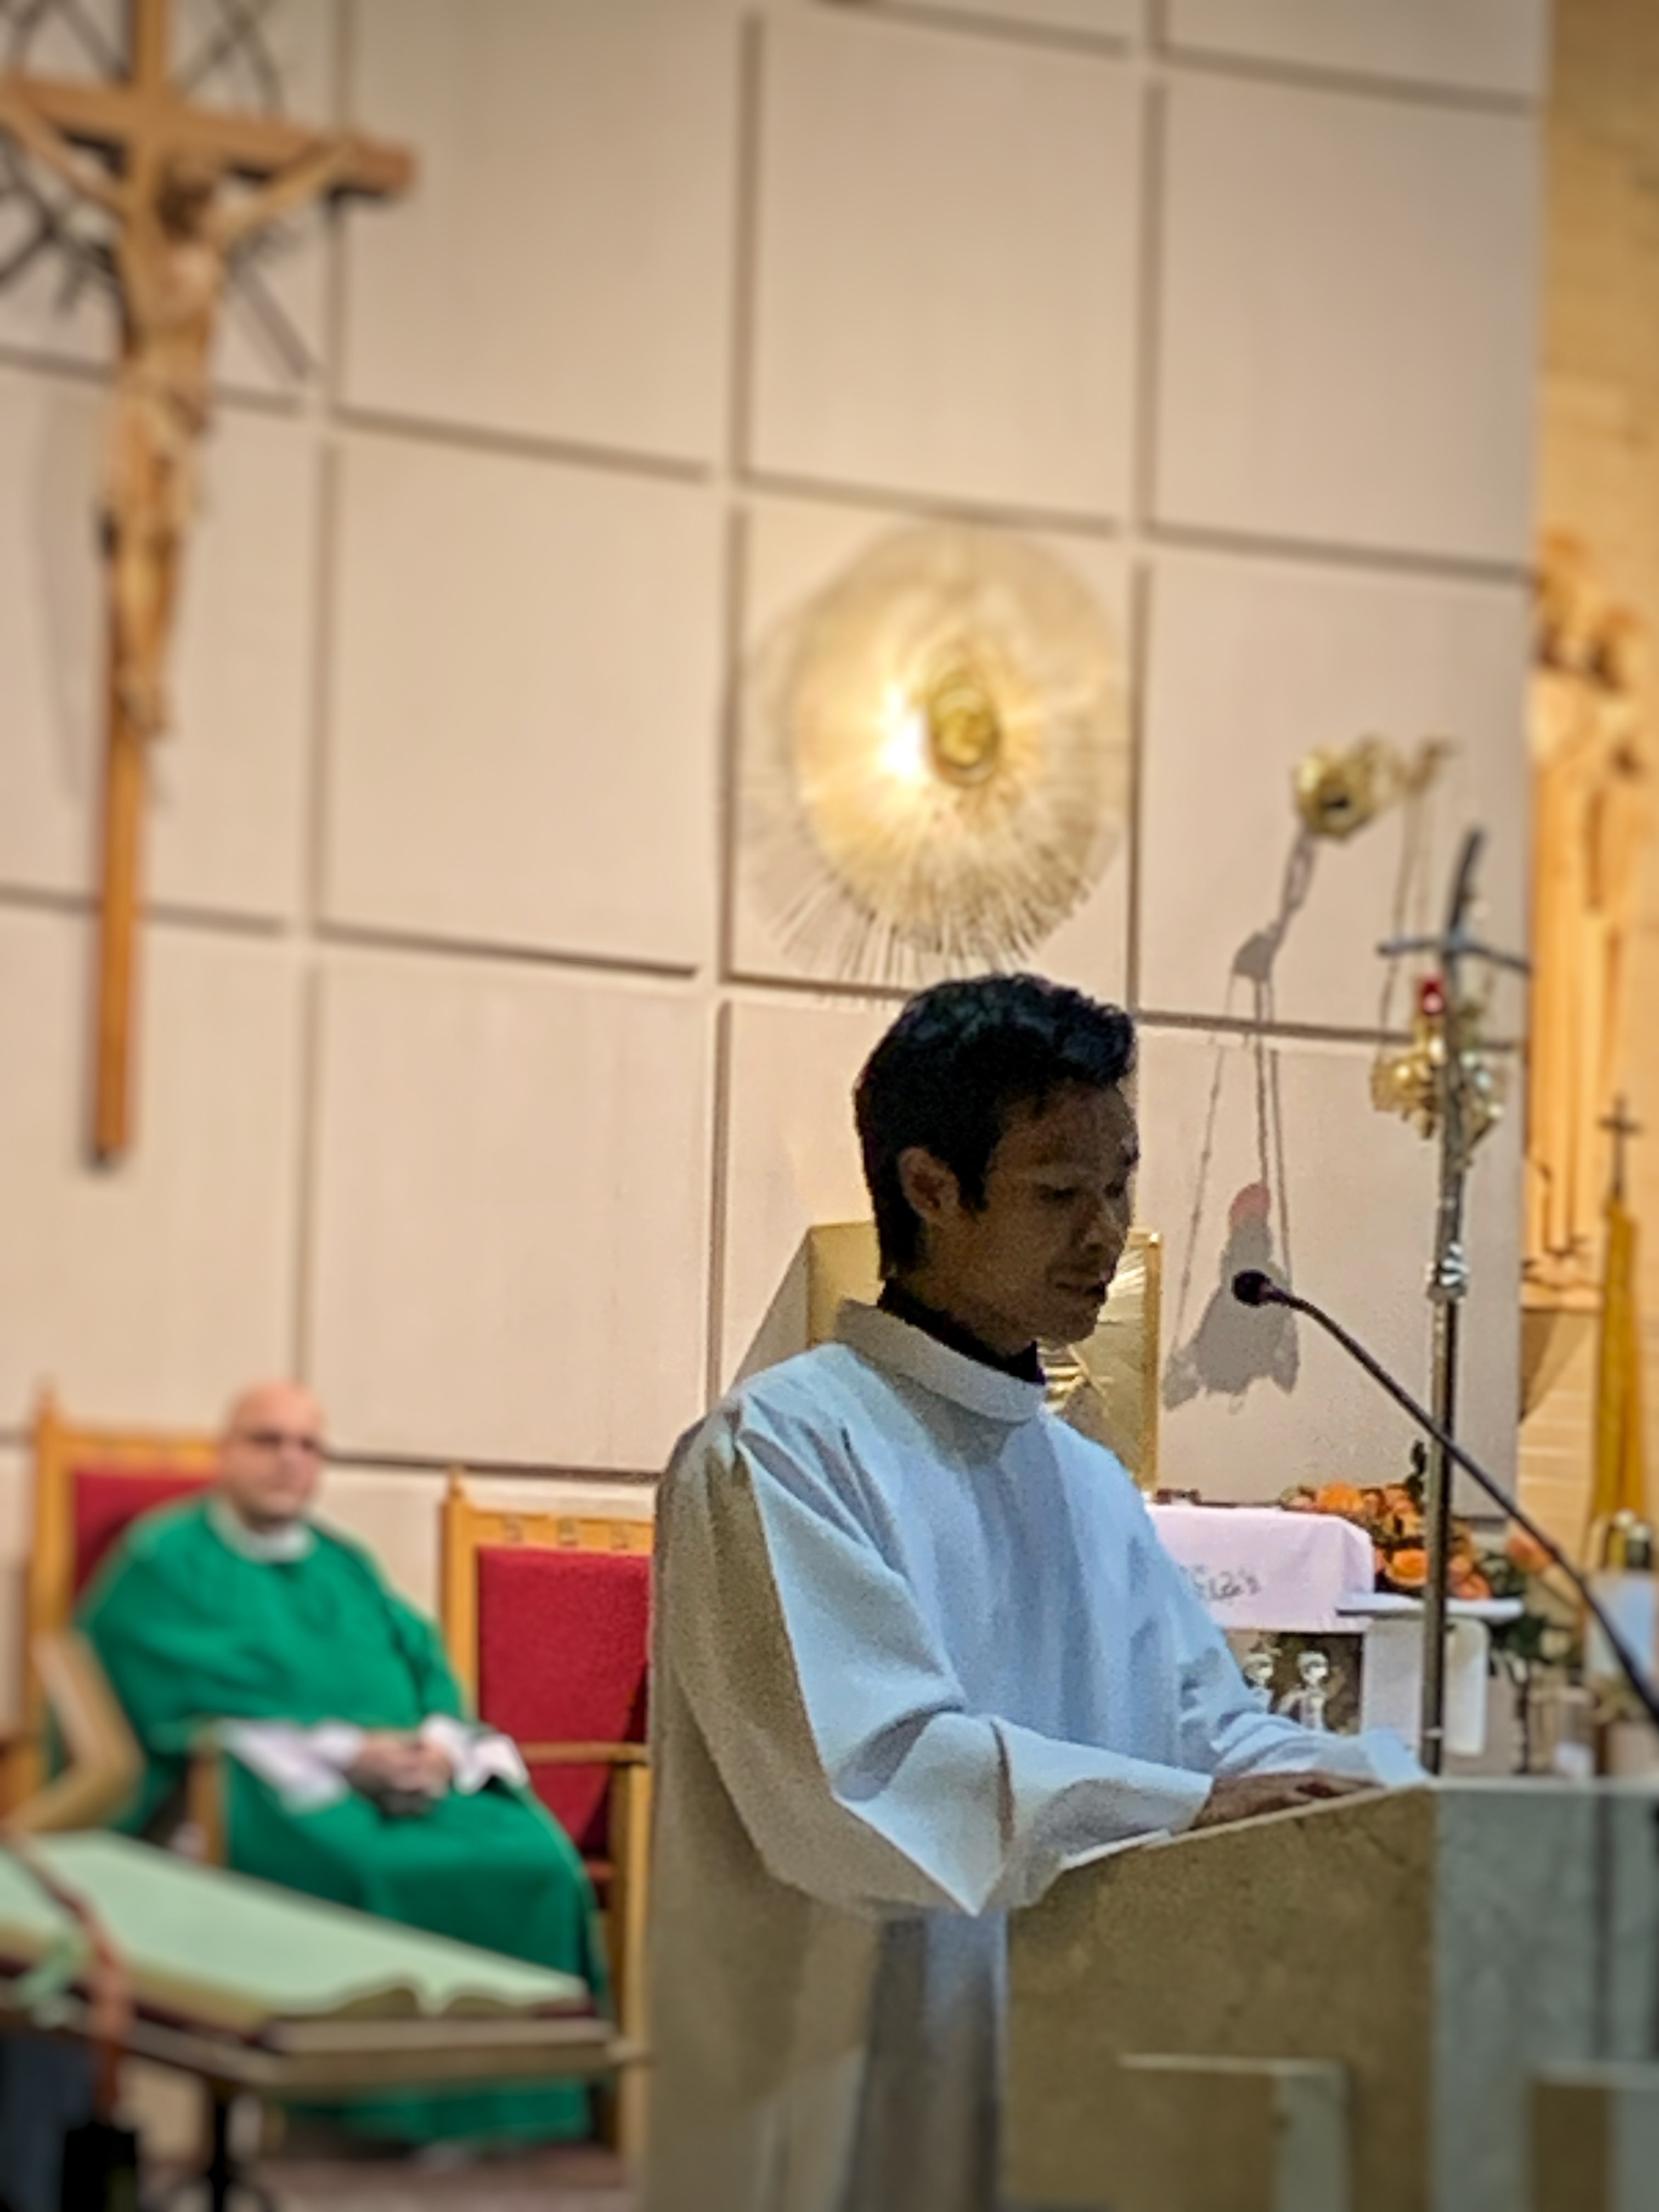 Frt. Boromeo Seo reads at the ambo during Catholic mass